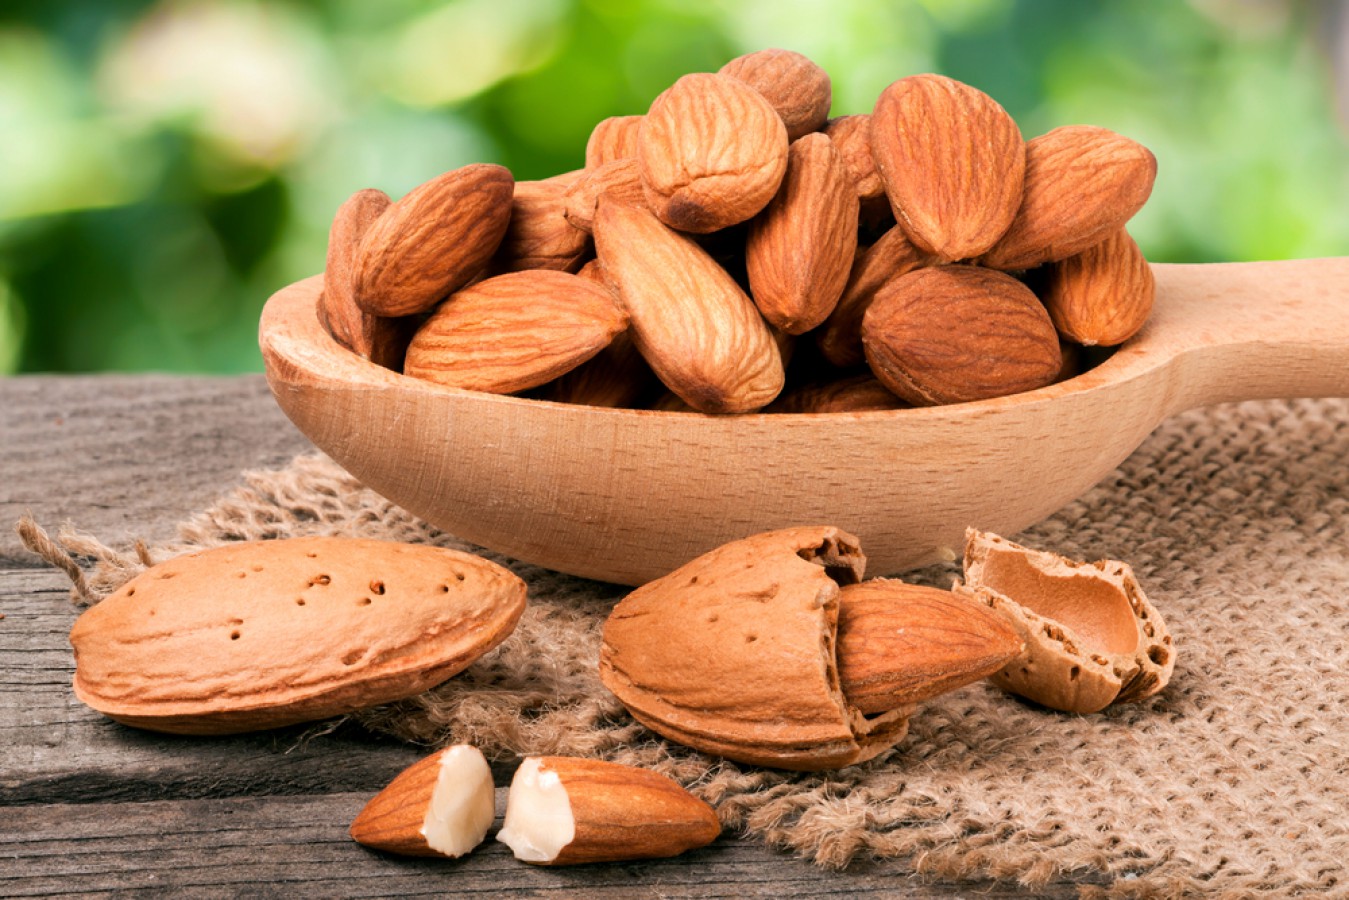 Image 4 Manfaat Almond Untuk Kulit, Termasuk Mencegah Penuaan Dini